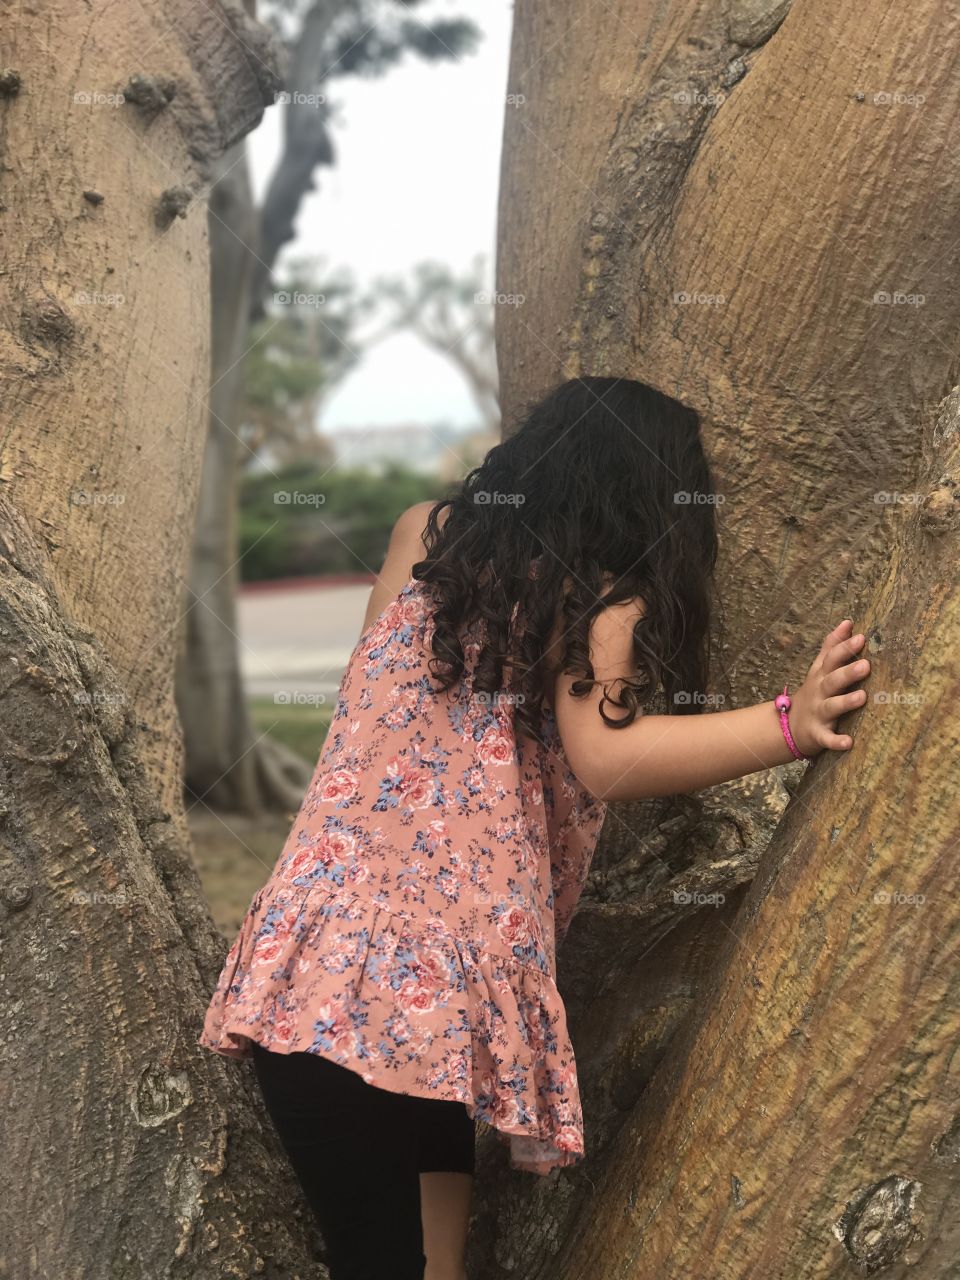 Tree climber 